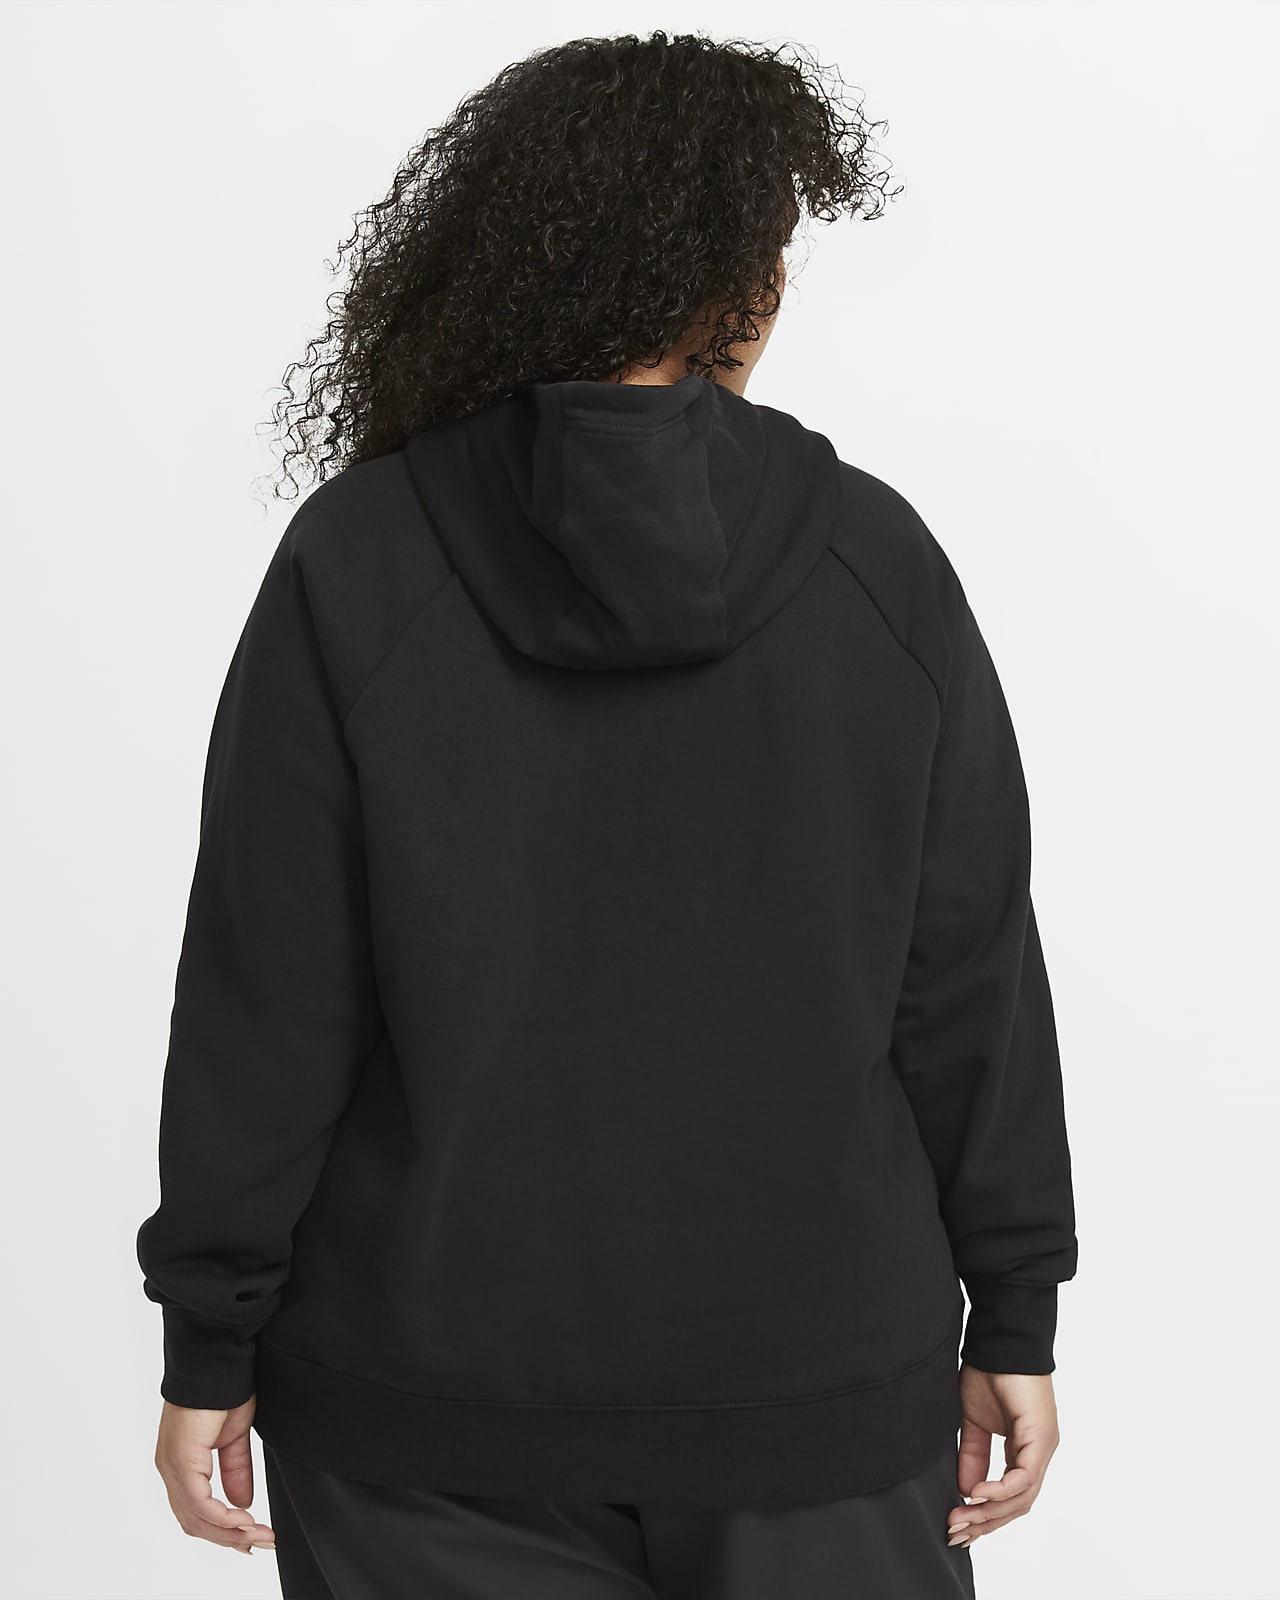 nike womens hoodie black